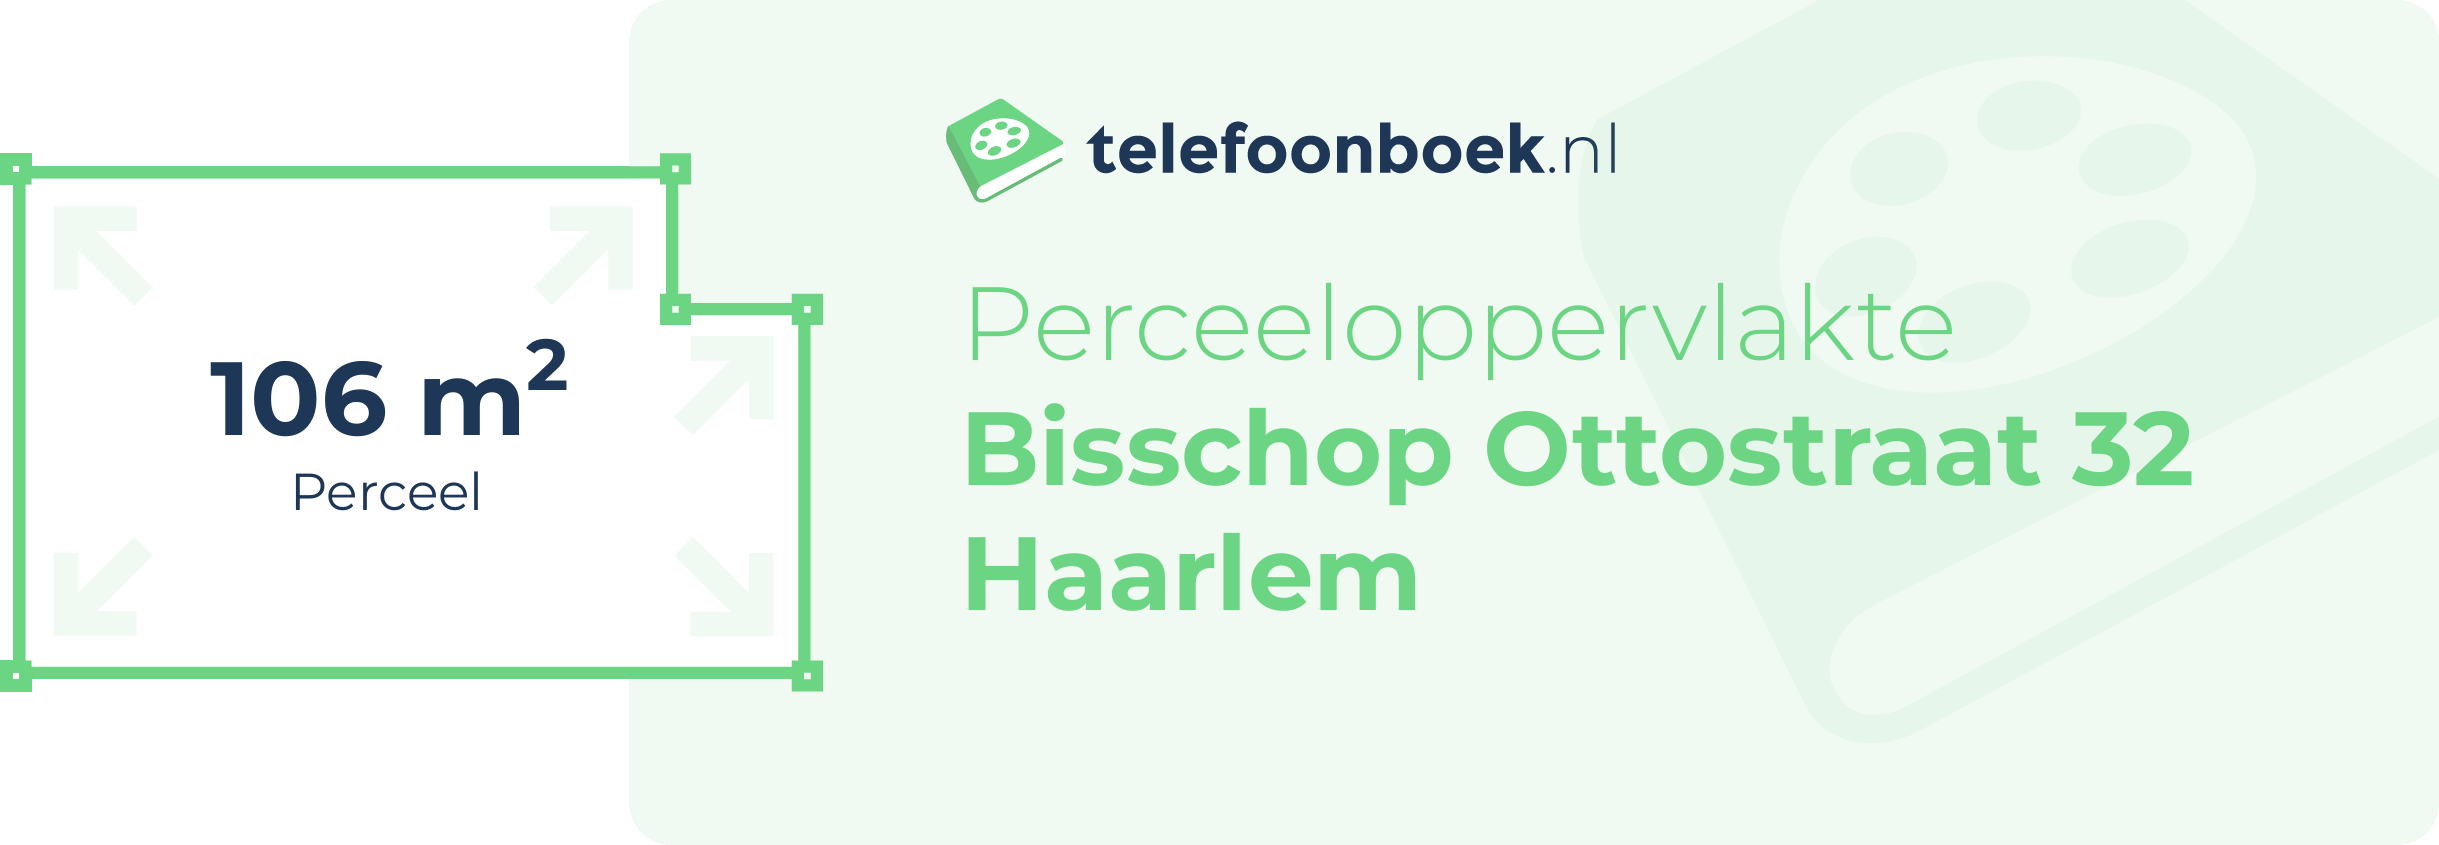 Perceeloppervlakte Bisschop Ottostraat 32 Haarlem